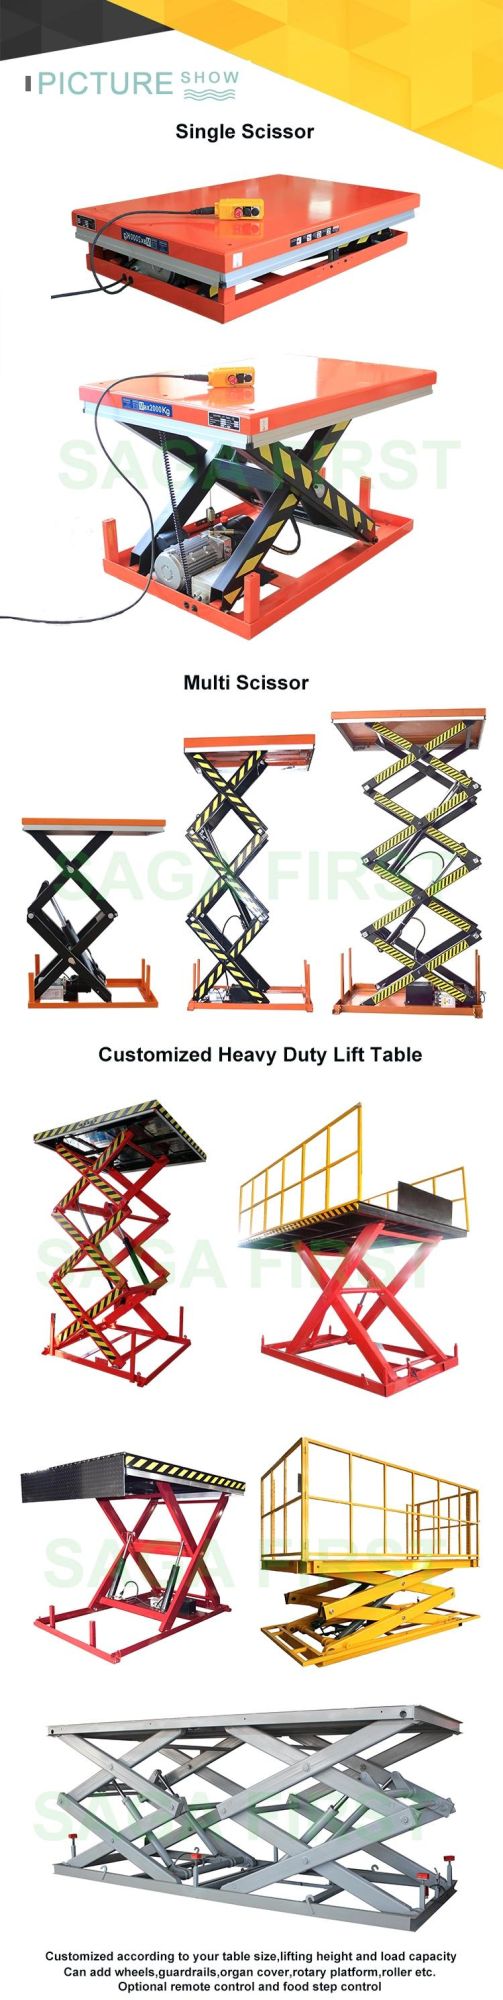 Hydraulic Construction Air Materials Small Lifting Tools